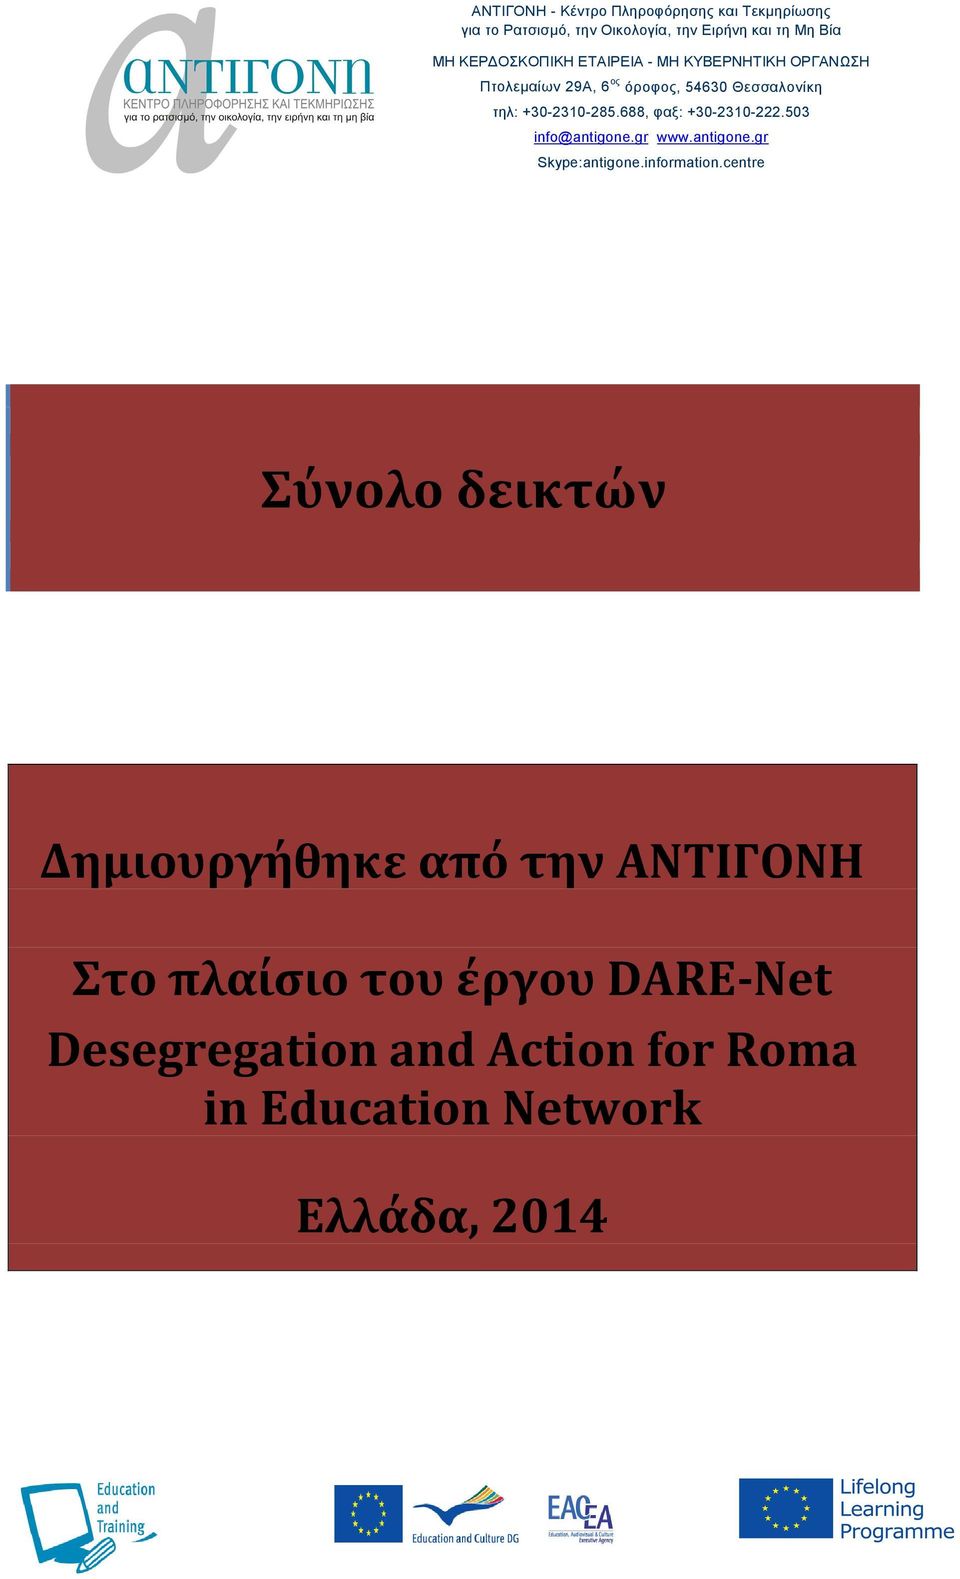 688, φαξ: +30-2310-222.503 info@antigone.gr www.antigone.gr Skype:antigone.information.